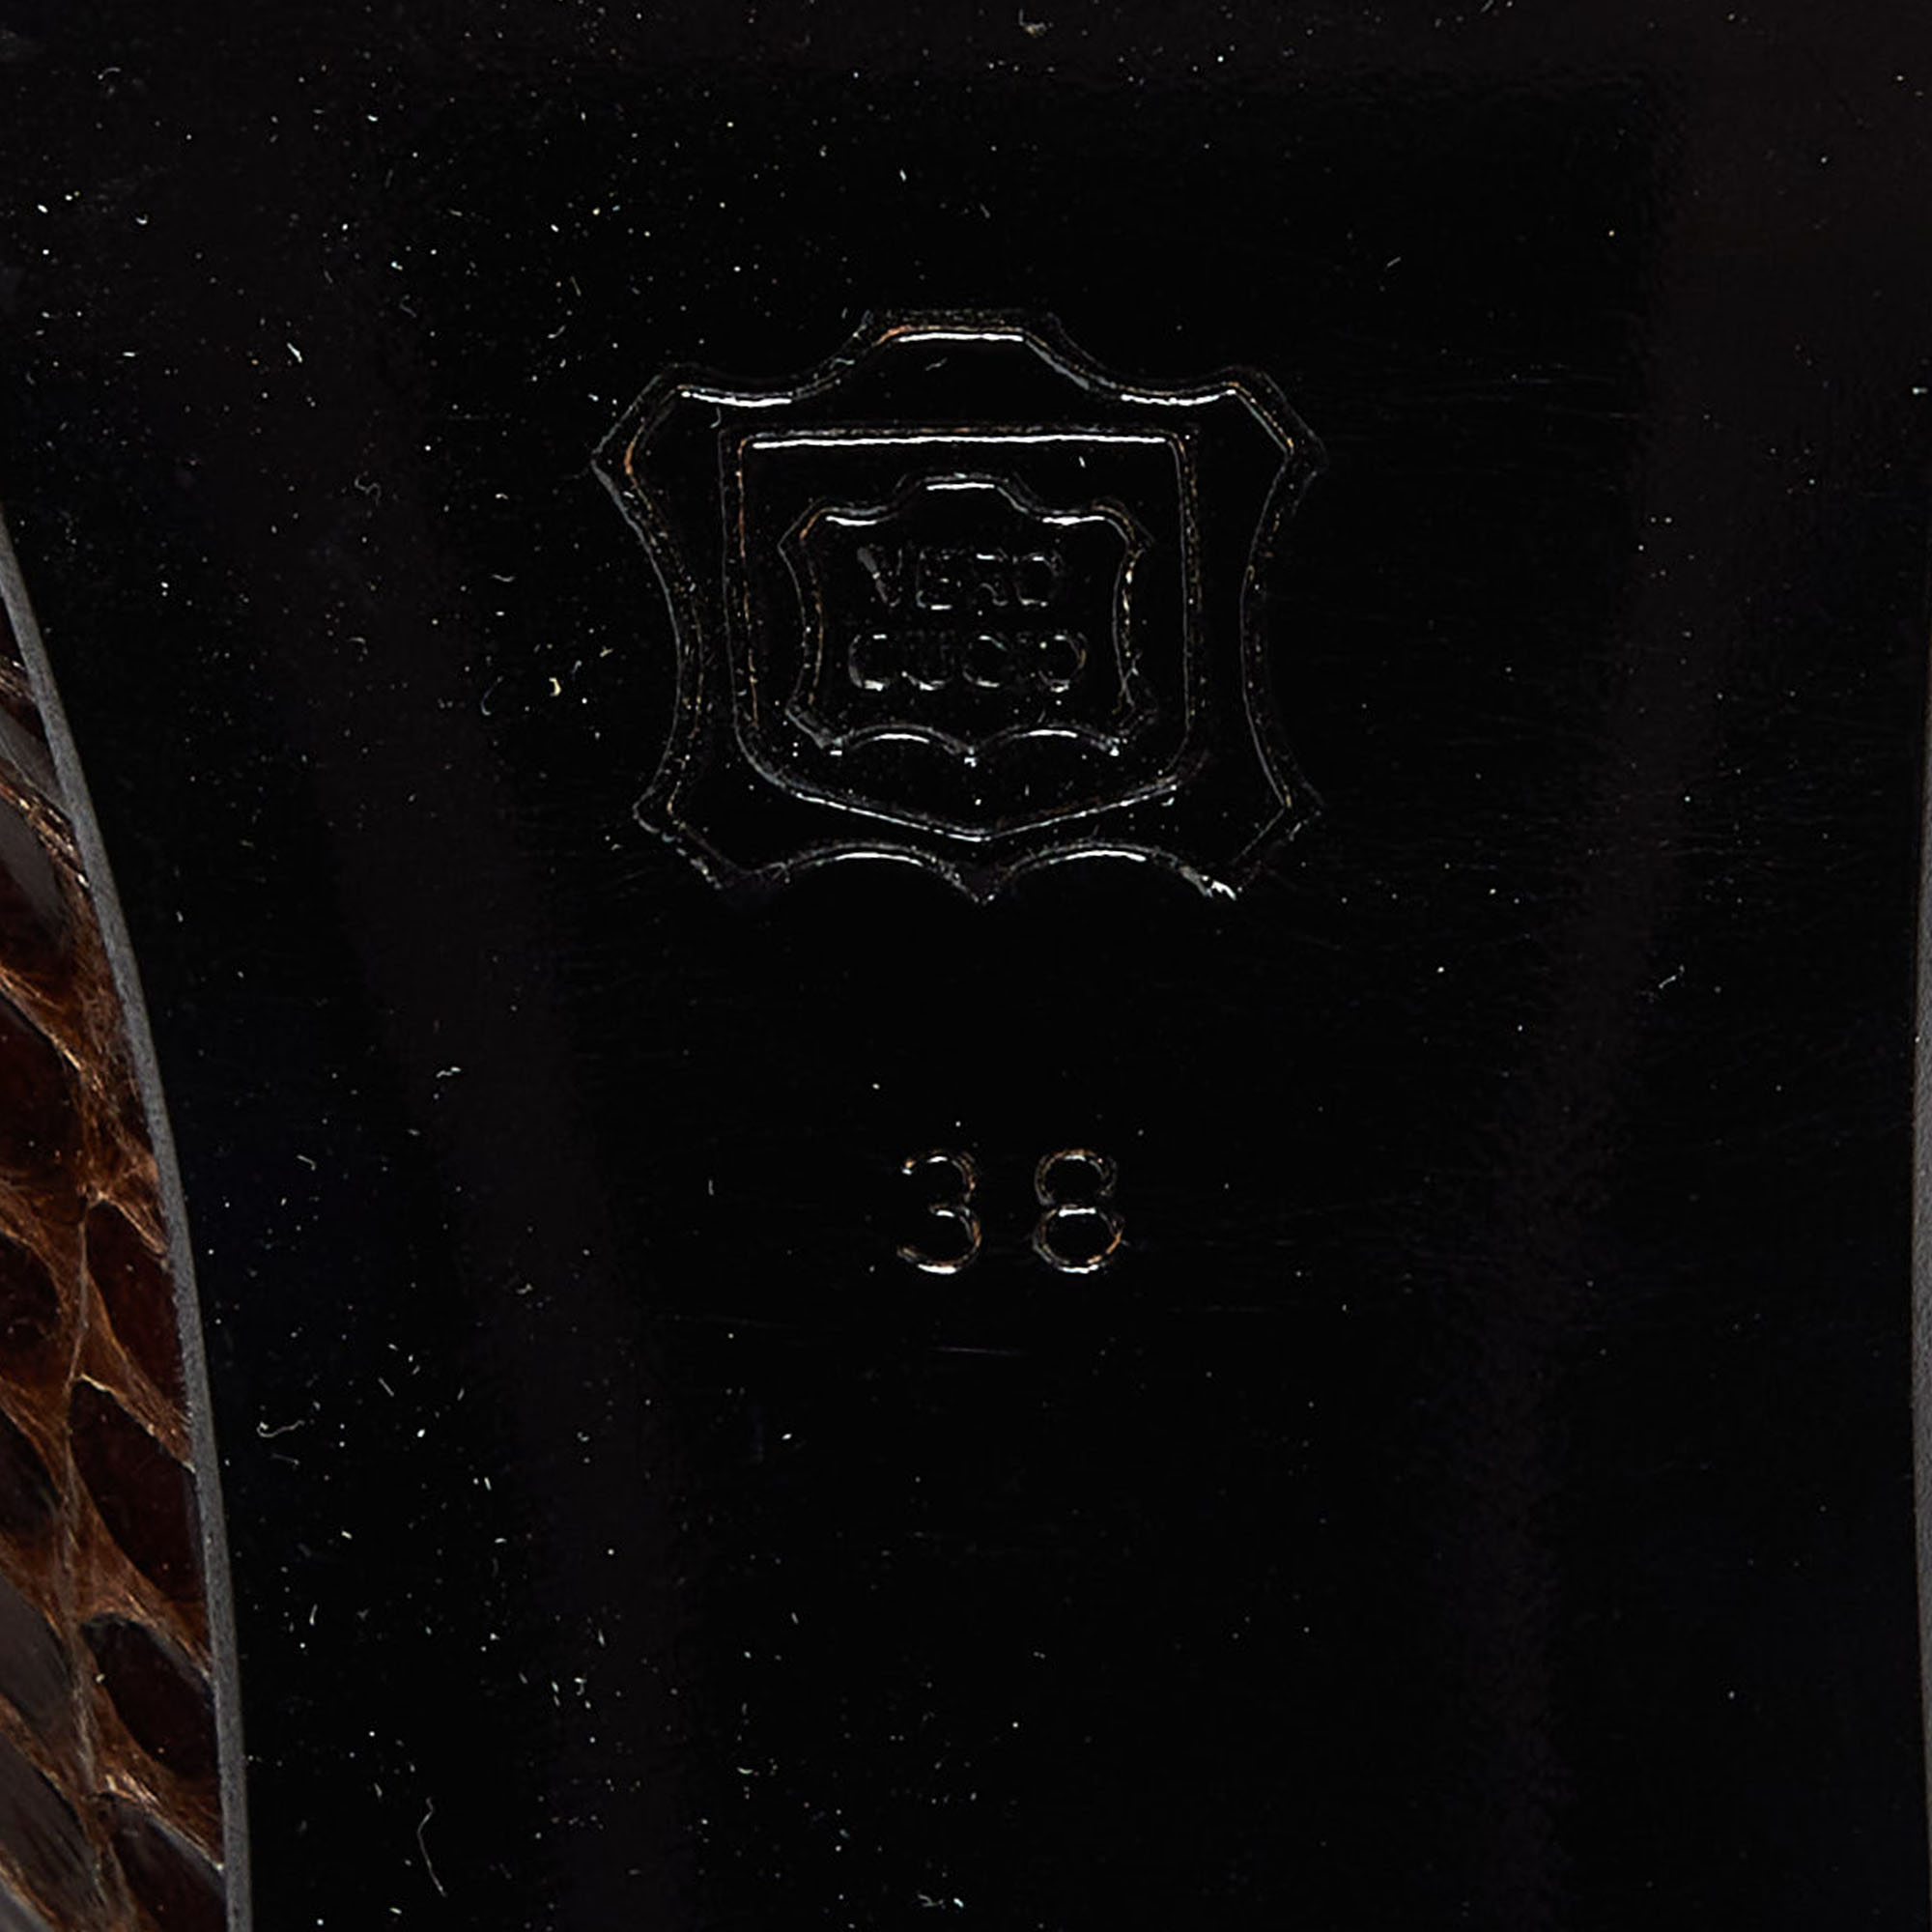 Dolce & Gabbana Brown Python Block Heel Pumps Size 38